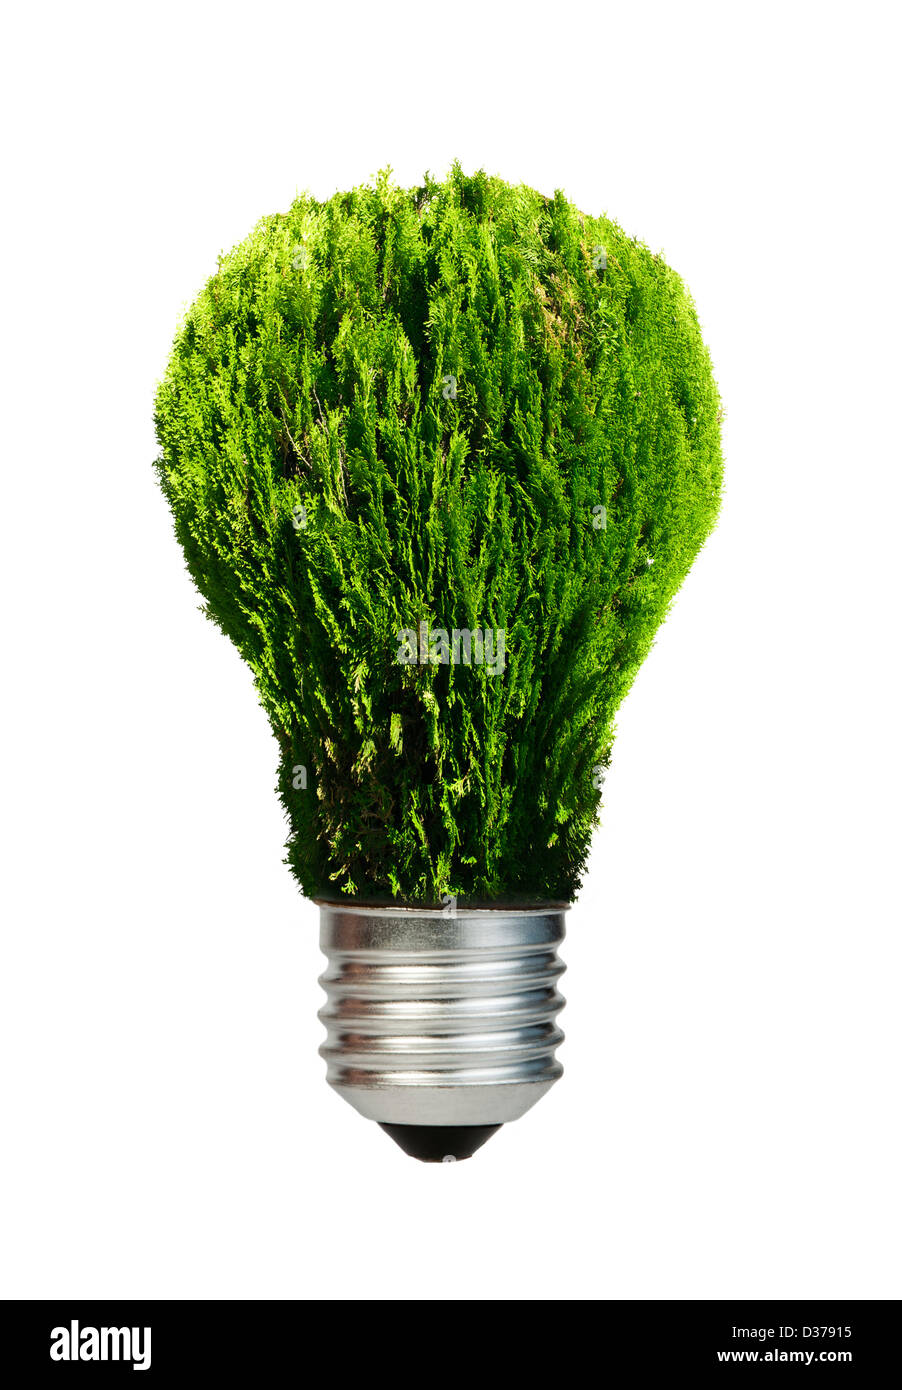 Lampe aus grünen Pflanzen. Ökologie-Konzeption. Blauer Himmel. Stockfoto